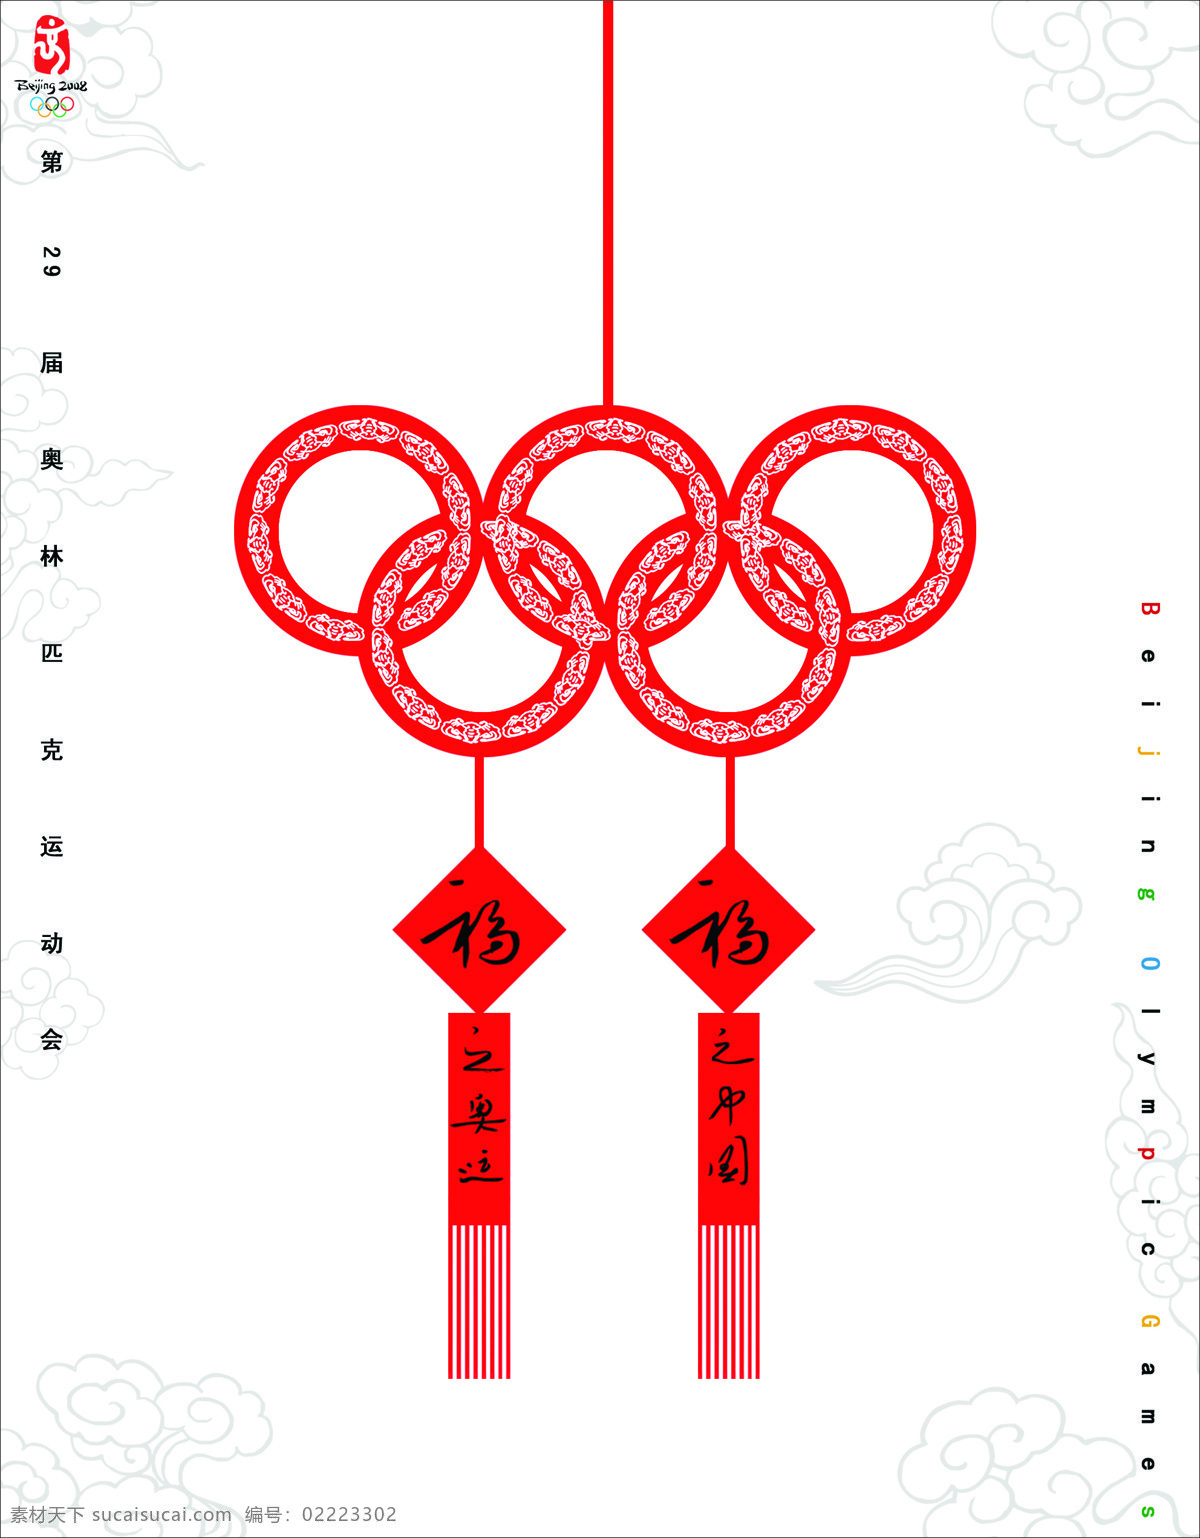 奥运 招贴 奥运海报 设计图库 招贴设计 奥运招贴 奥运题材招贴 奥运题材 海报 招贴欣赏 其他海报设计